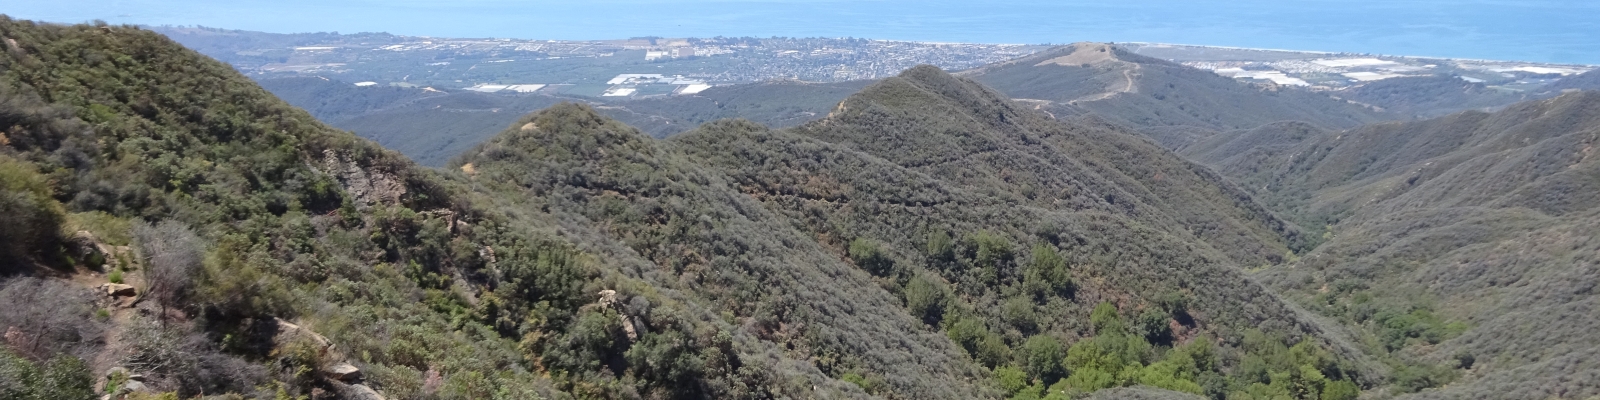 Franklin Trail | Santa Barbara Hikes